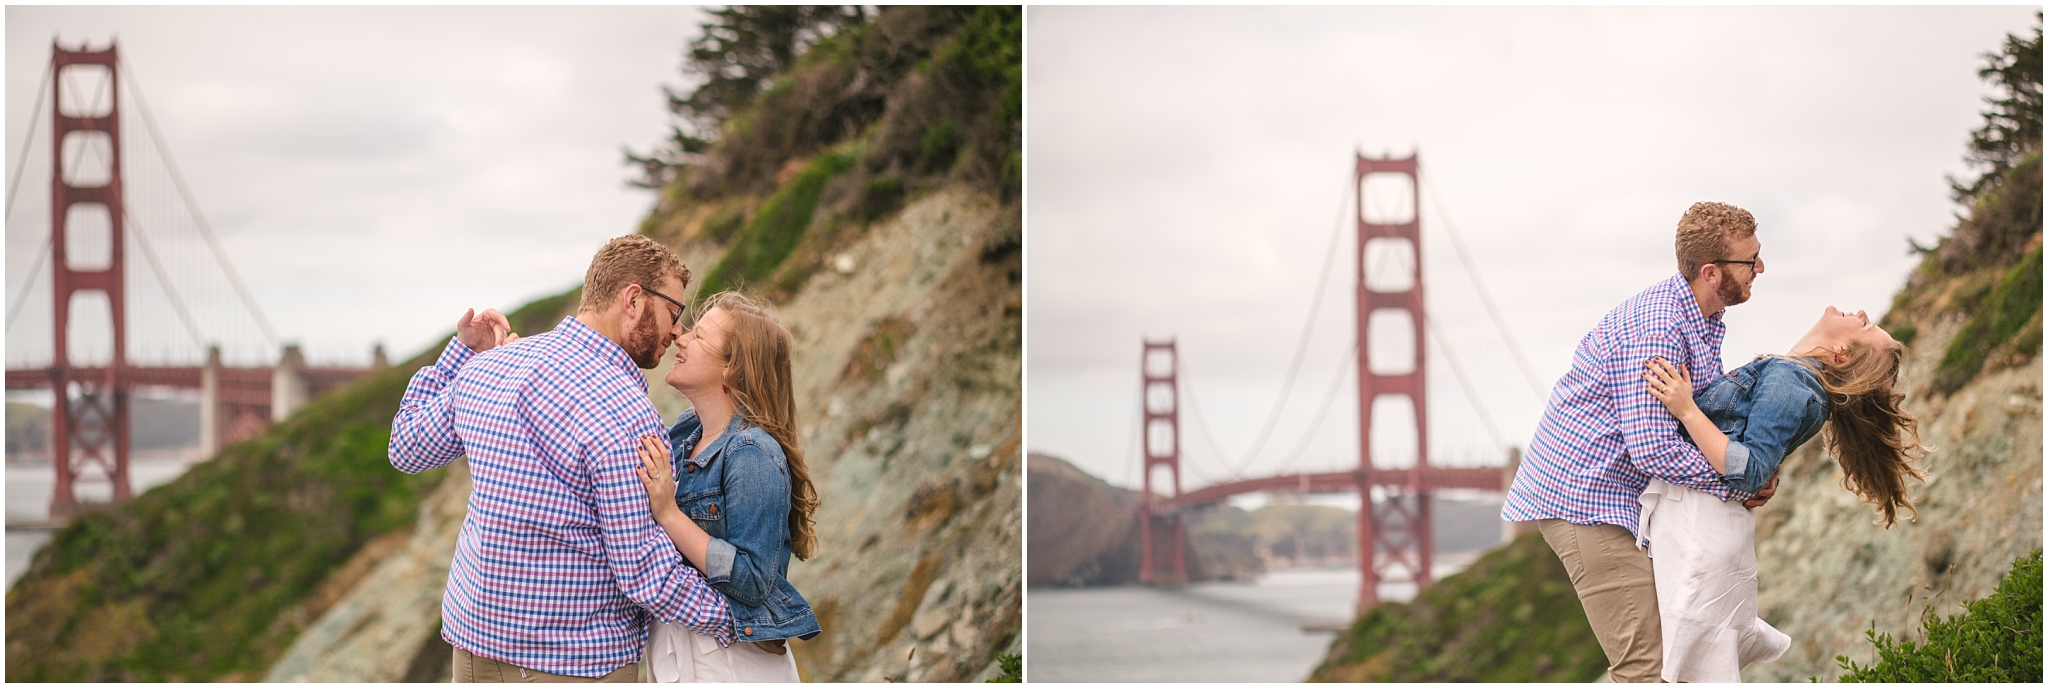 Golden Gate Bridge engagement pictures